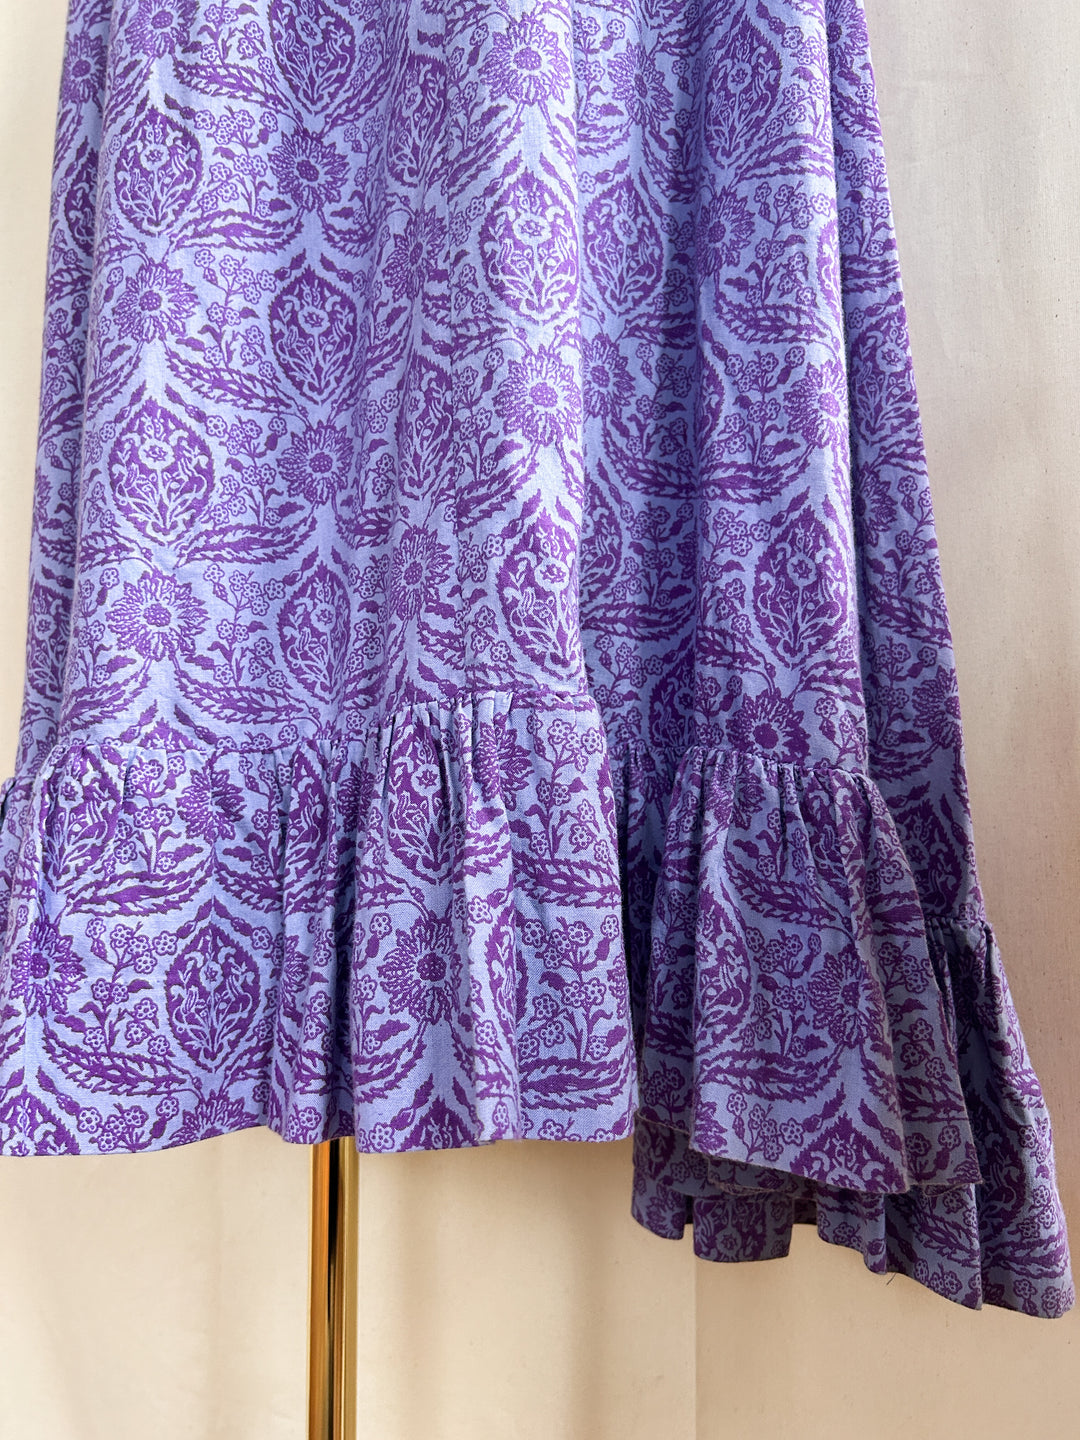 Foxglove ~ Stunning Holy Grail Rare Laura Ashley Puff sleeve Romantic prairie dress